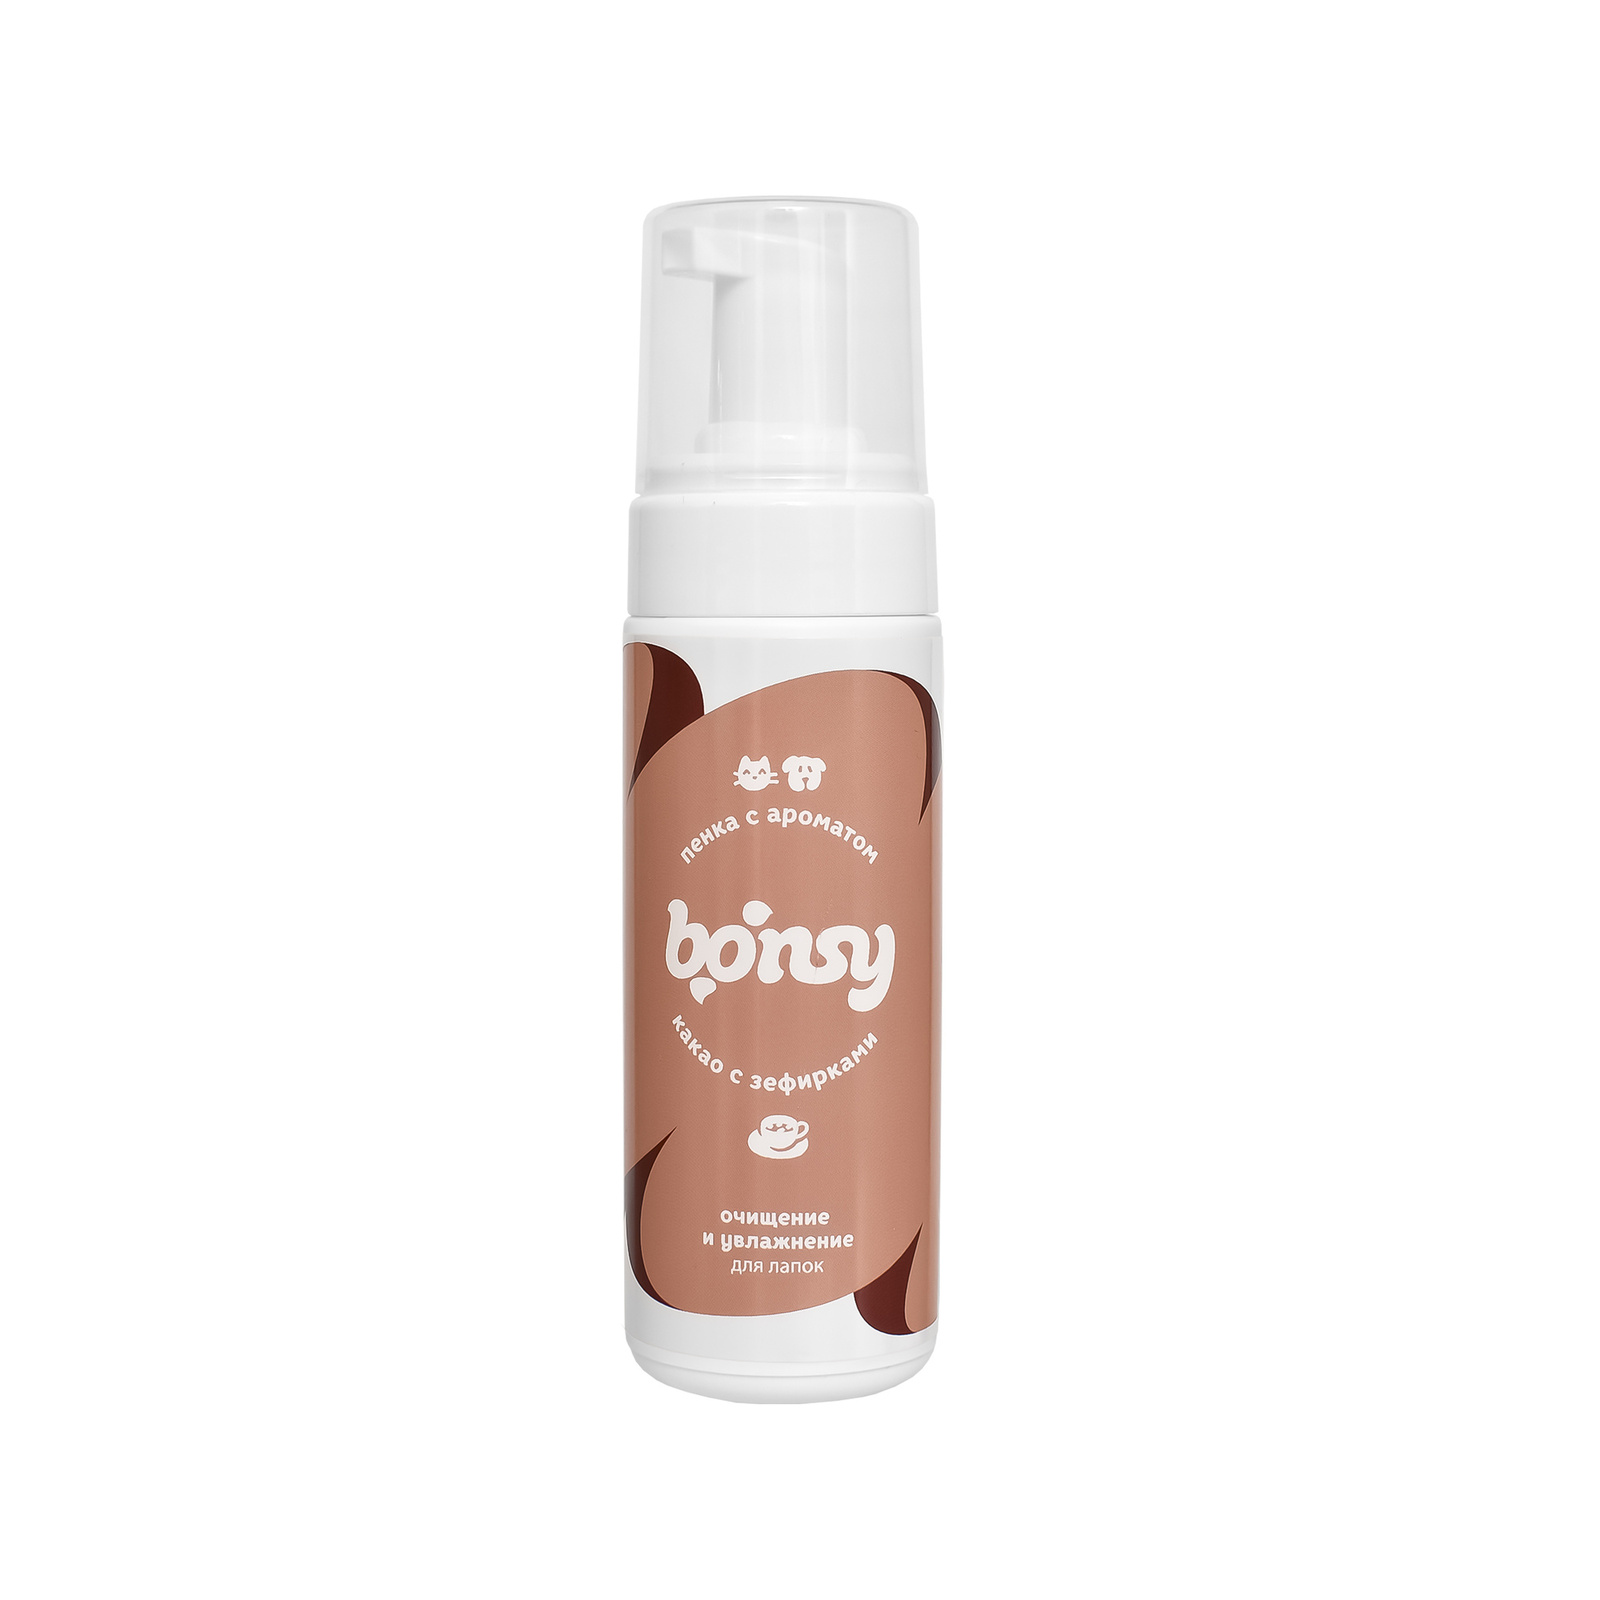 Bonsy Bonsy пенка для лап: очищение и увлажнение с ароматом Какао с зефирками (150 мл) bonsy bonsy мыло для лап с ароматом апельсиновый джем фрэш 500 г